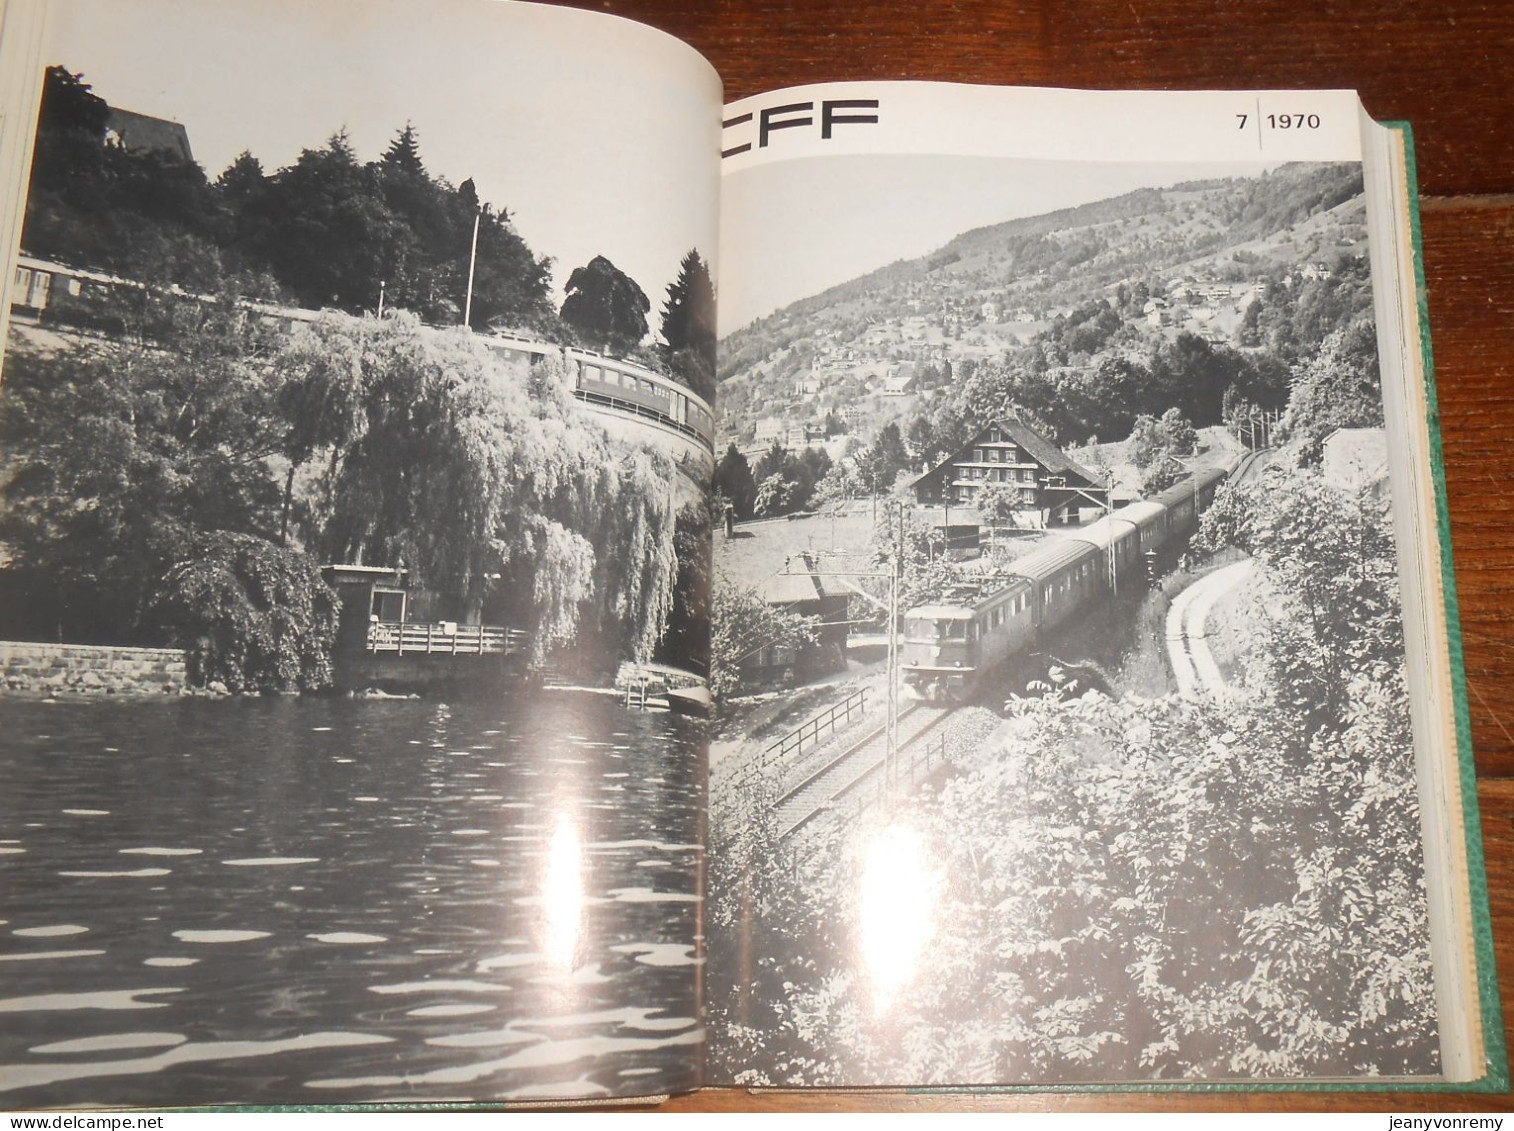 CFF. 24 revues reliées.1/1970 à 12/1971.